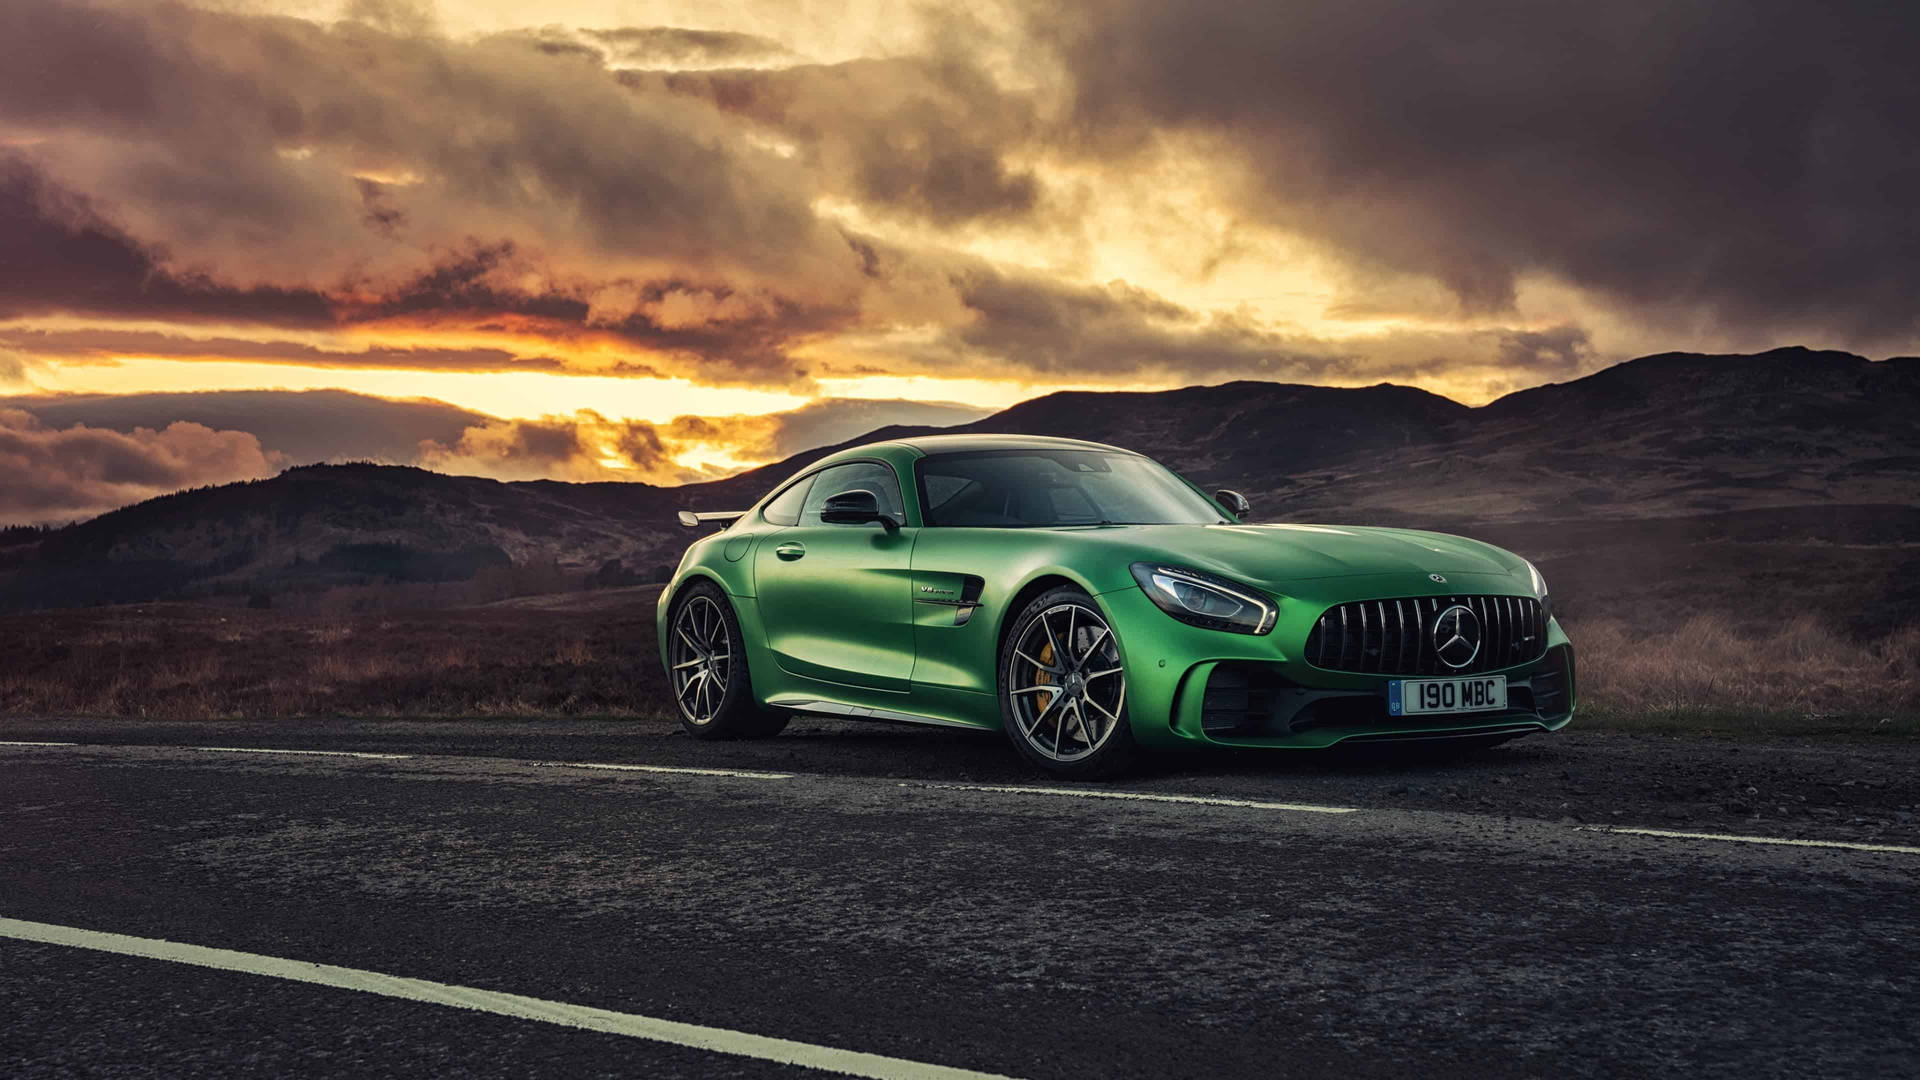 Se kraften af ekspertise med en Mercedes Benz AMG Wallpaper